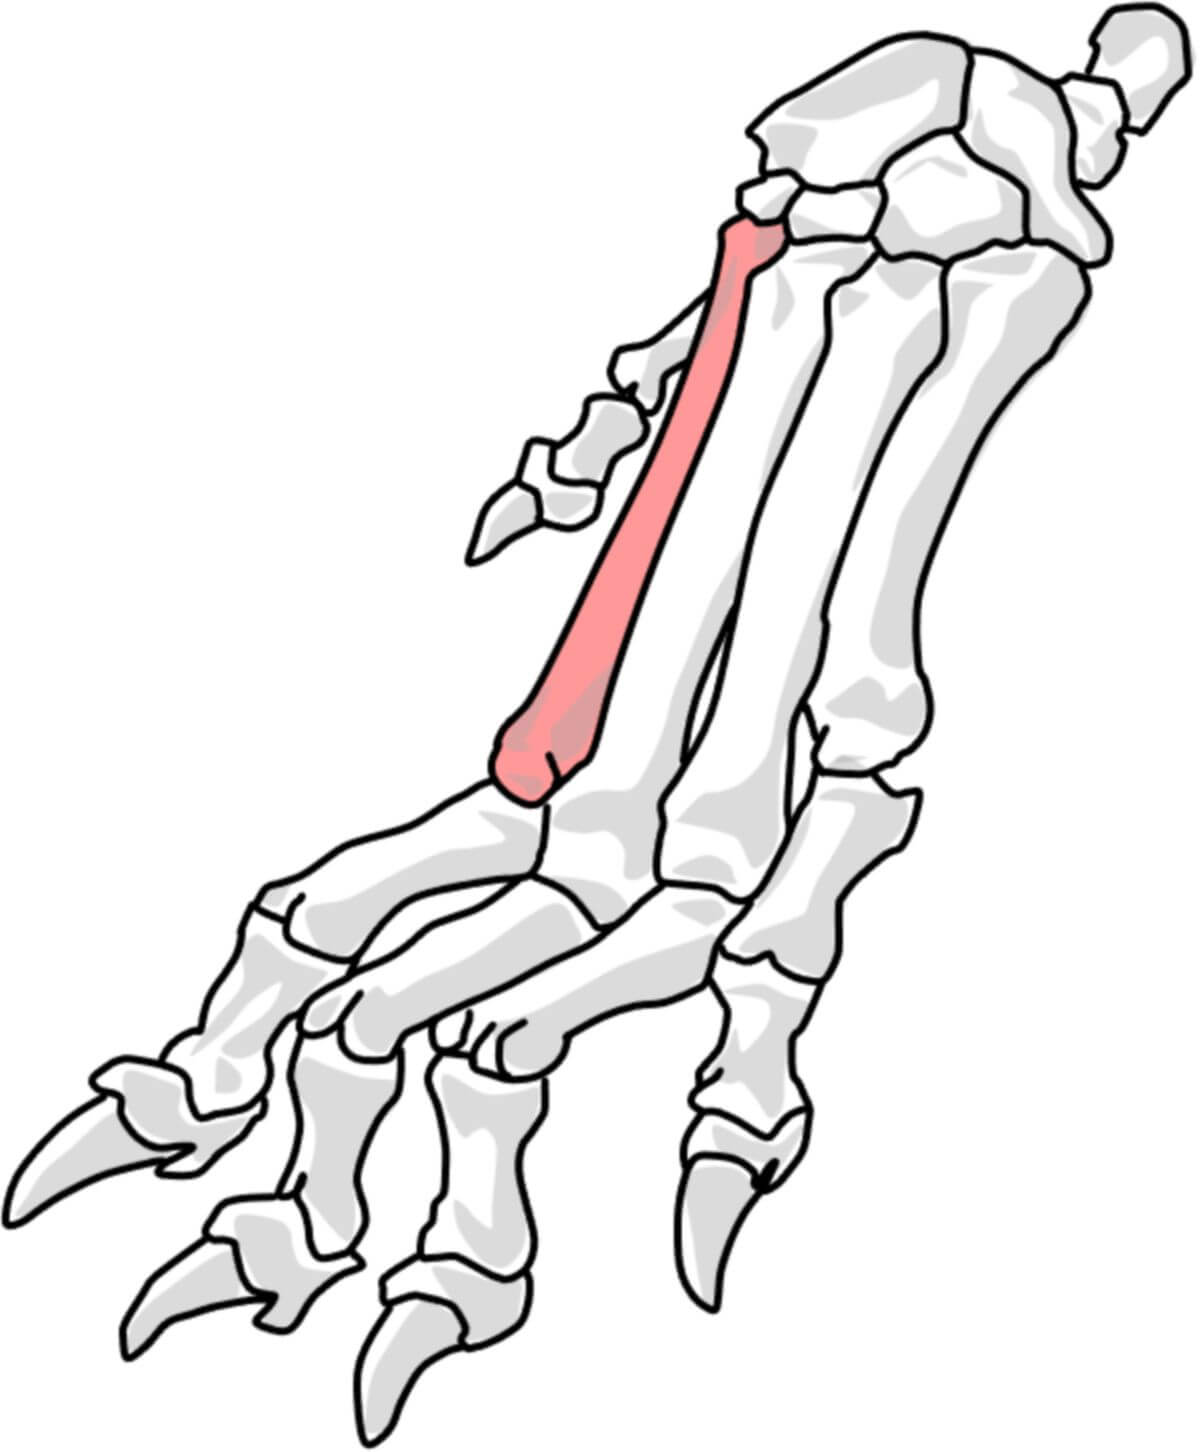 2. Metakarpalknochen beim Hund (© Patrick Messner)